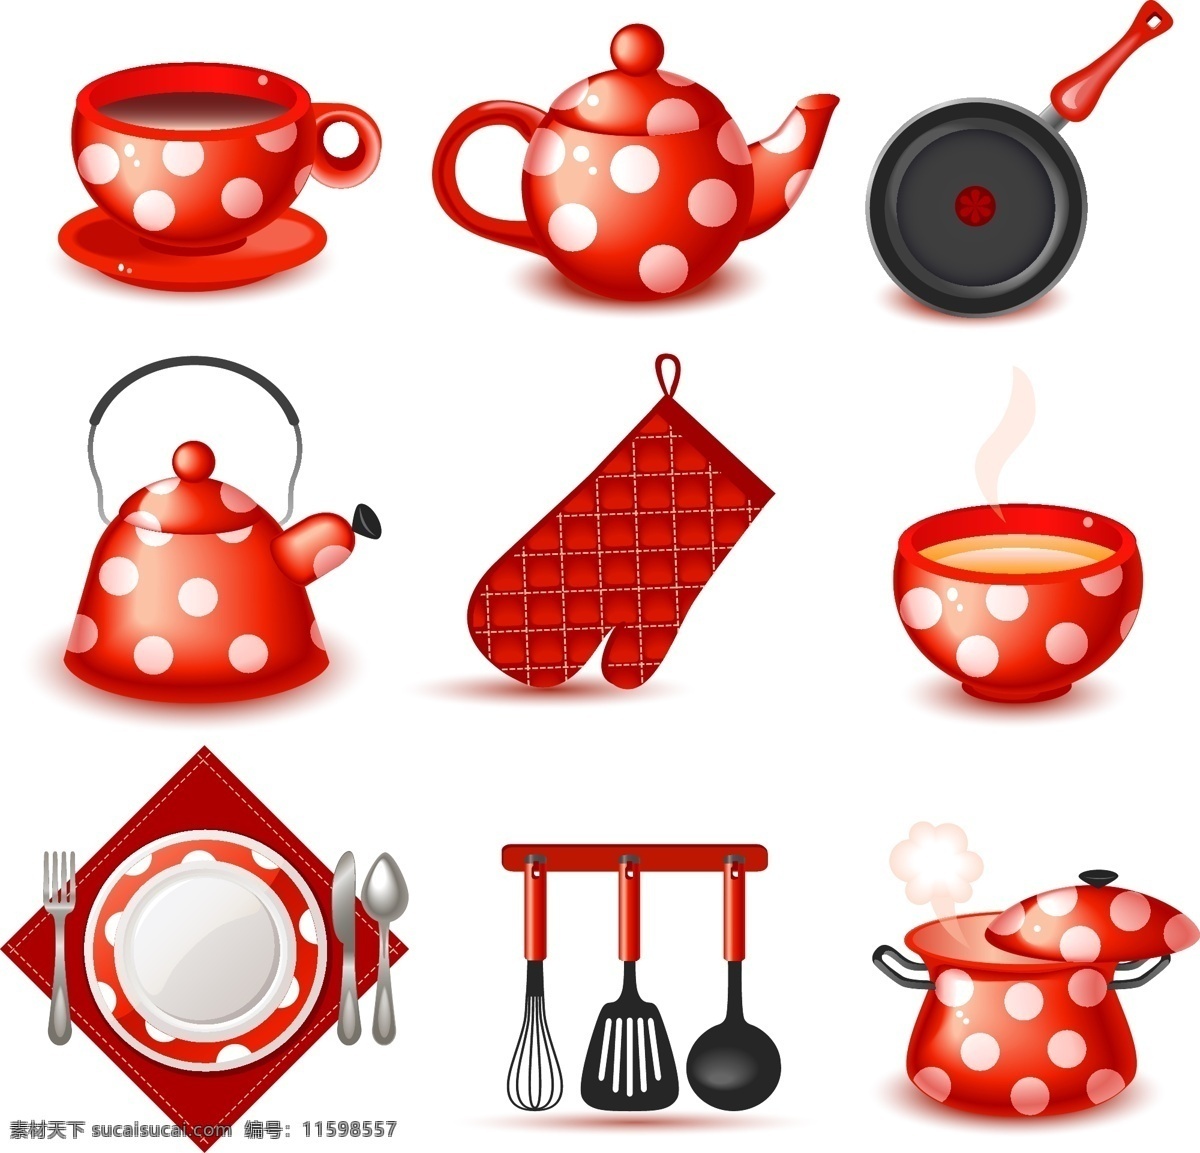 红色 书房 用具 图标 茶壶 炖锅 红色餐具 盘子